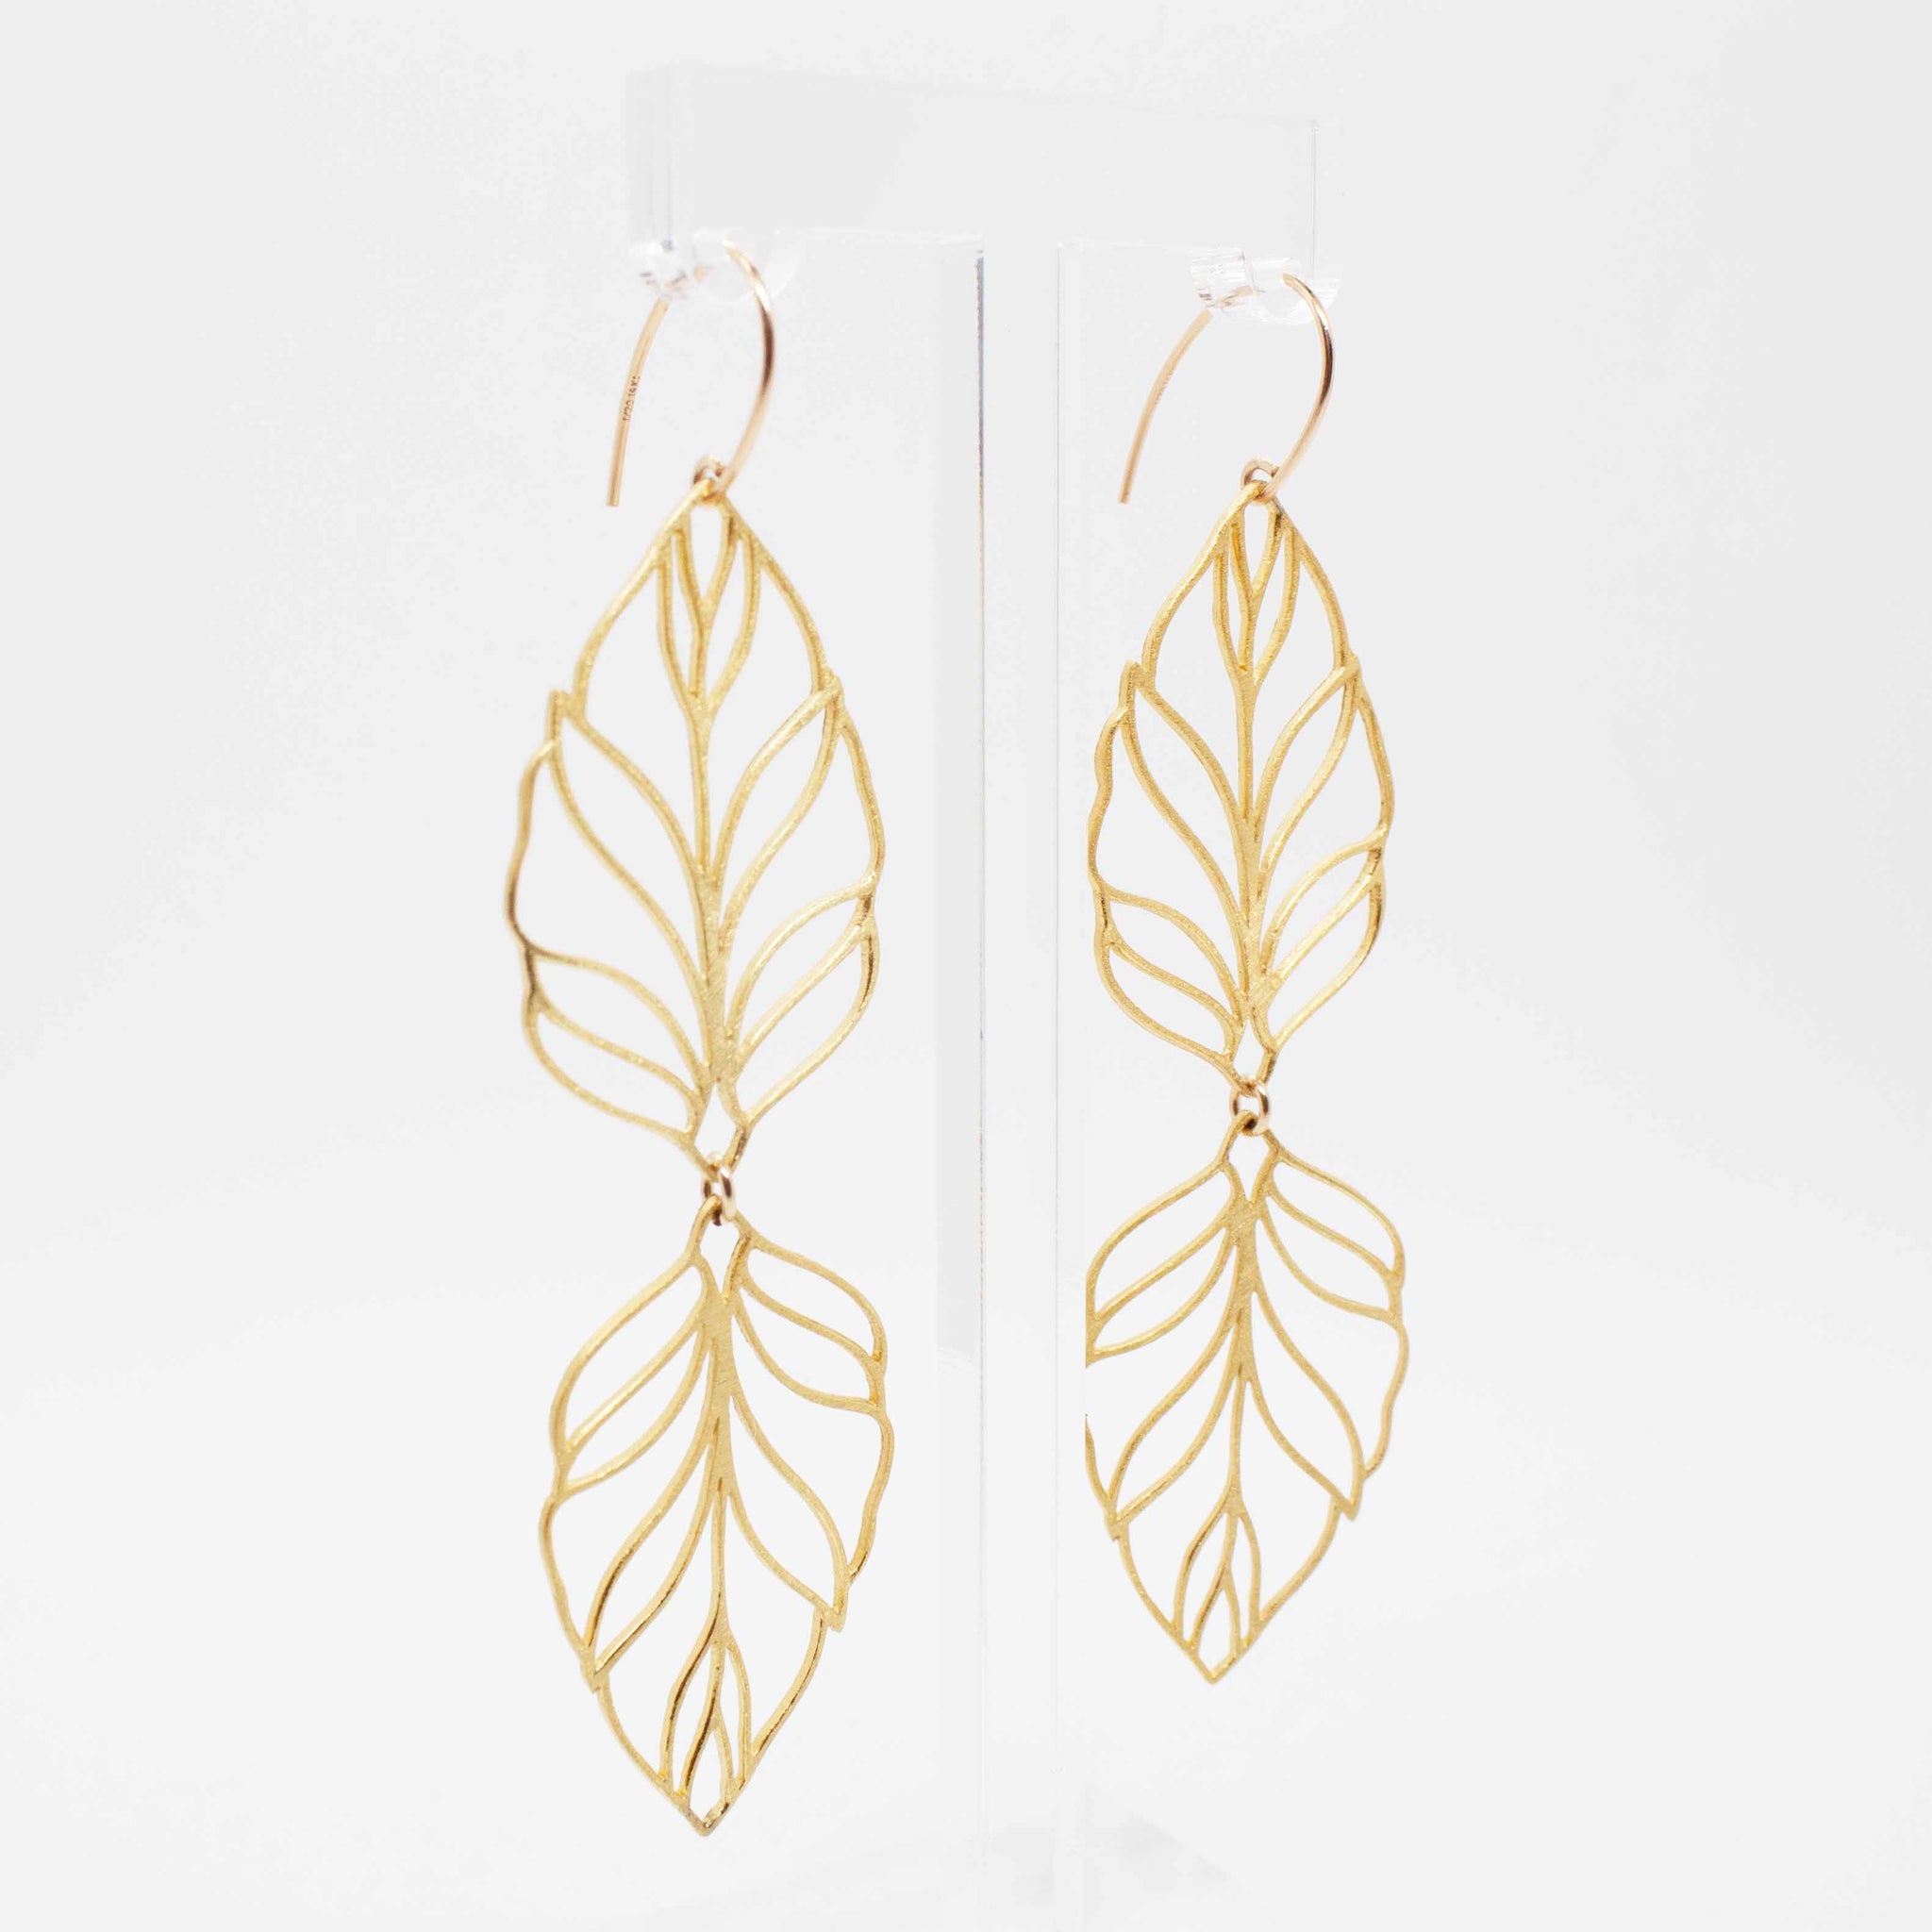 3 1/4 inch gold vermeil leaf statement earrings on 14 karat gold filled earring hooks.